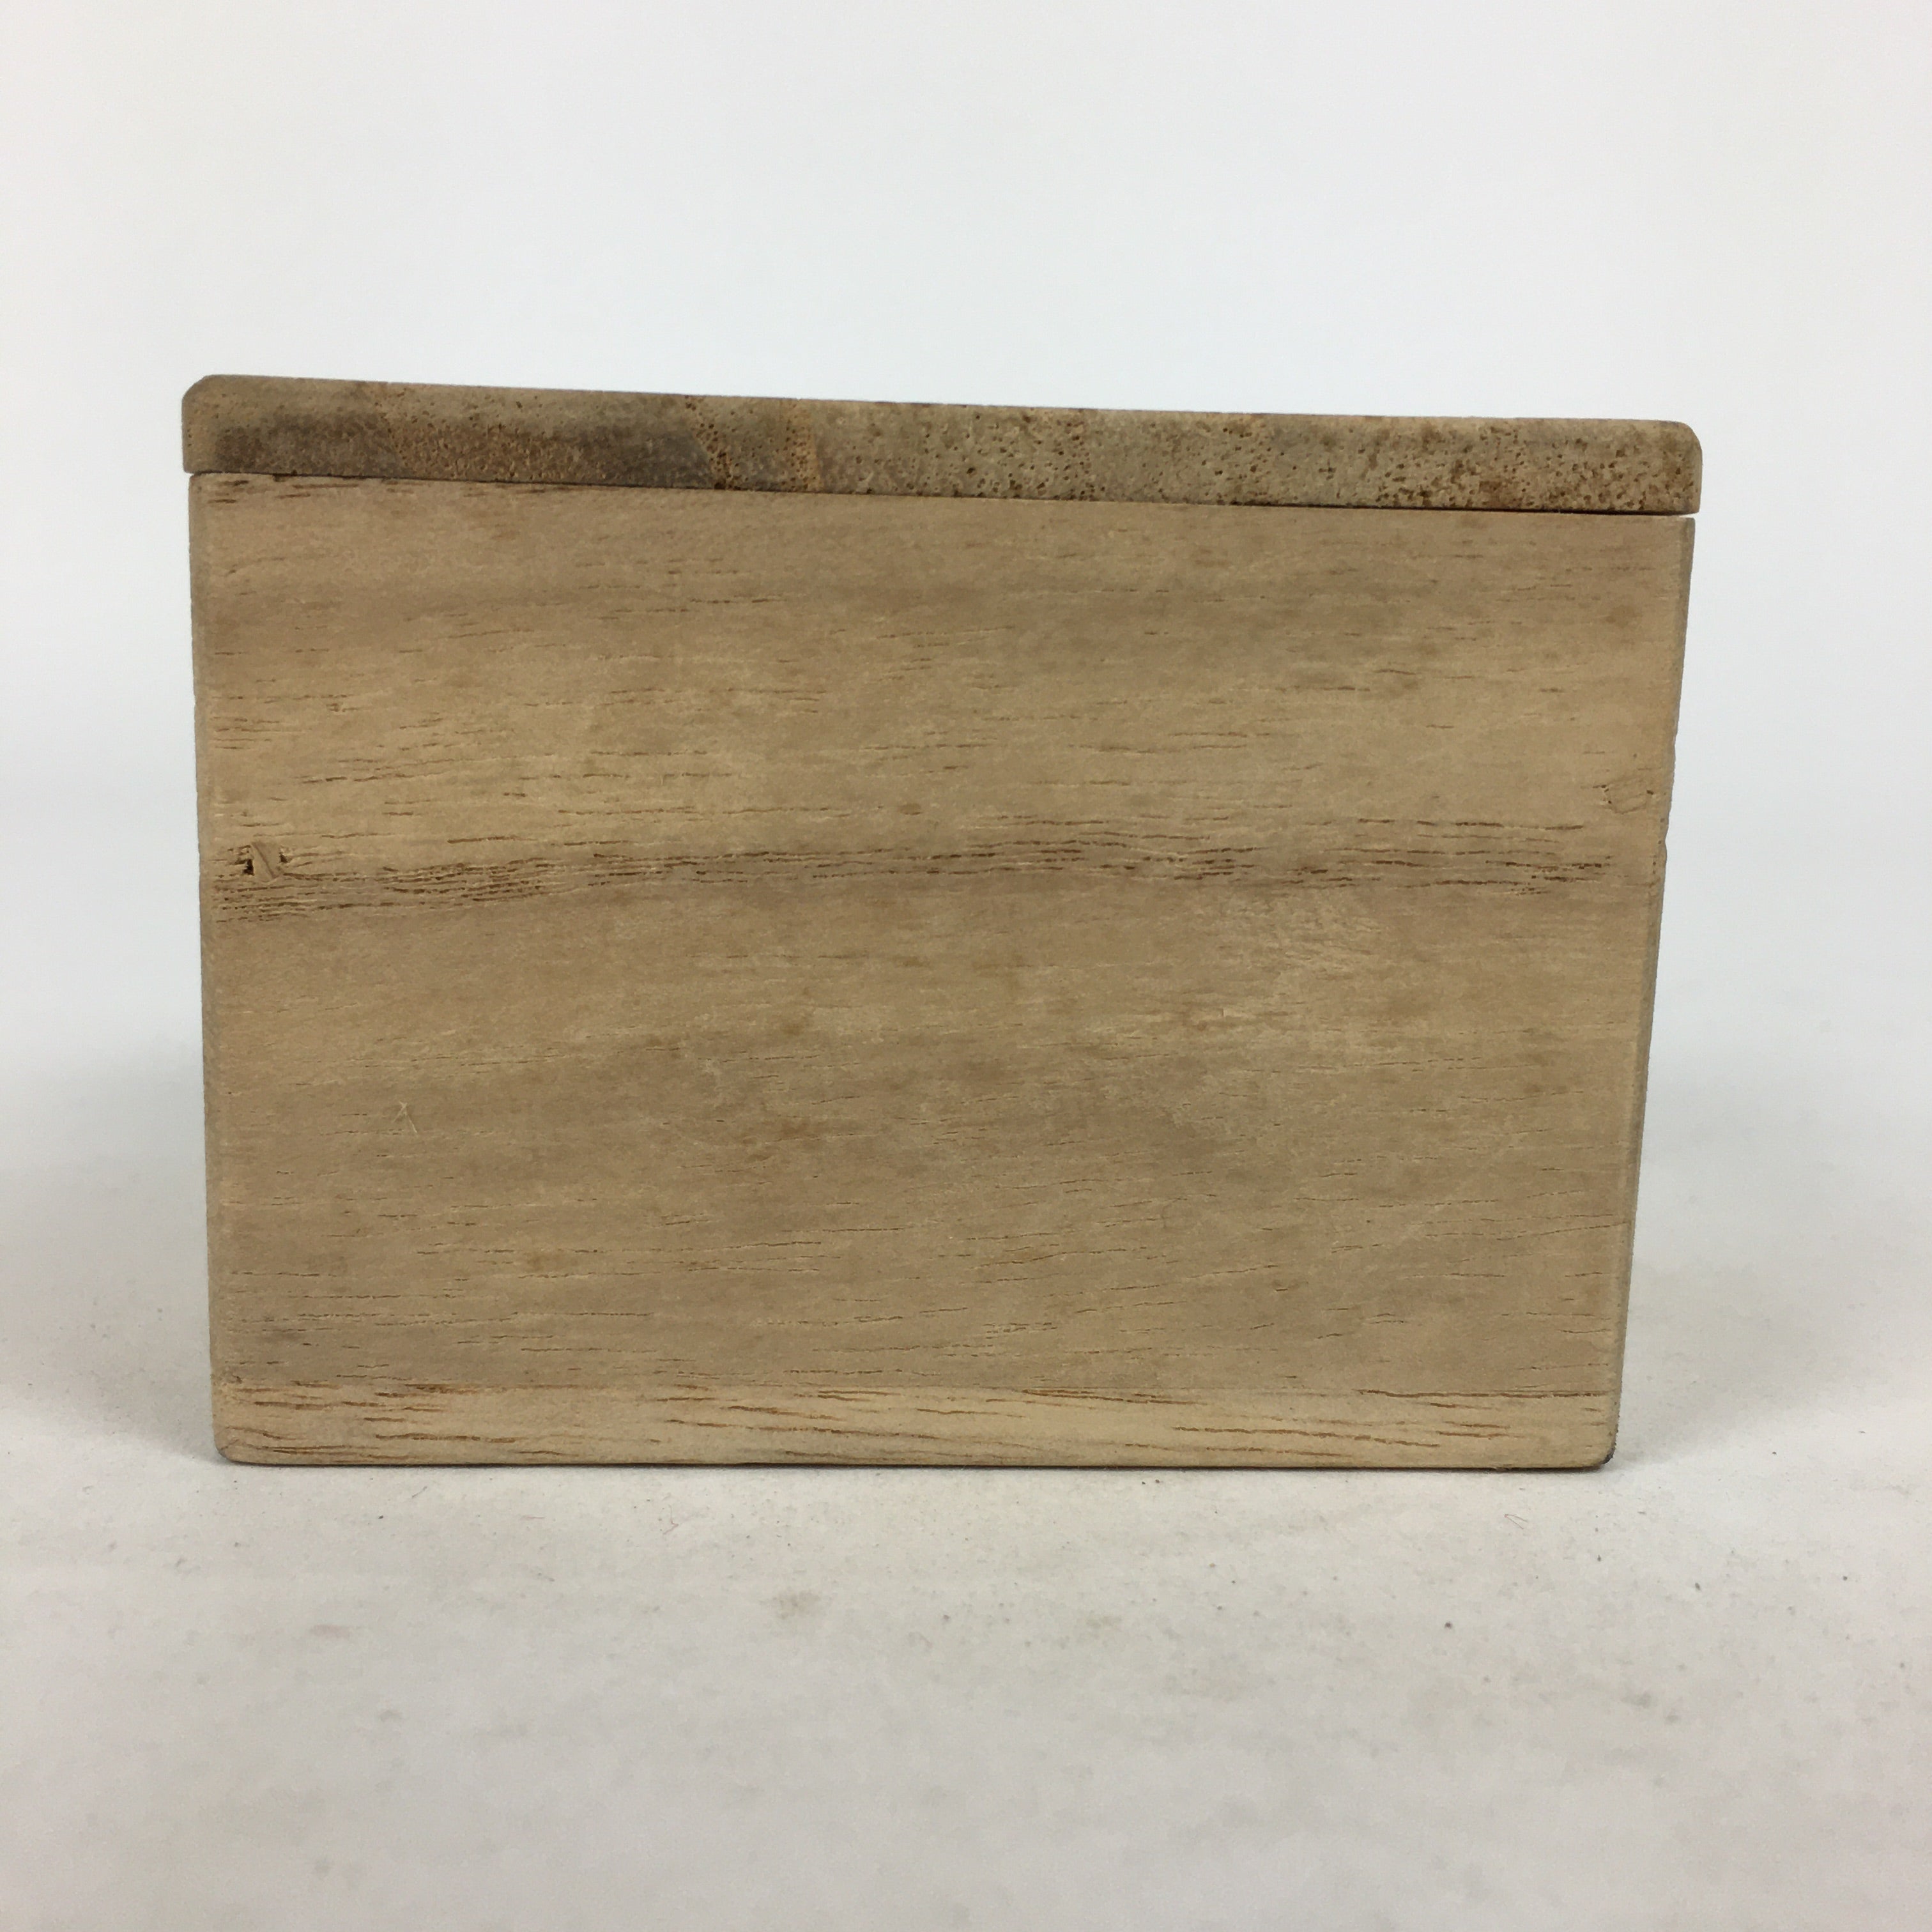 Japanese Wooden Storage Box Vtg Pottery Hako Inside 6.9x6.9x4.8cm WB894